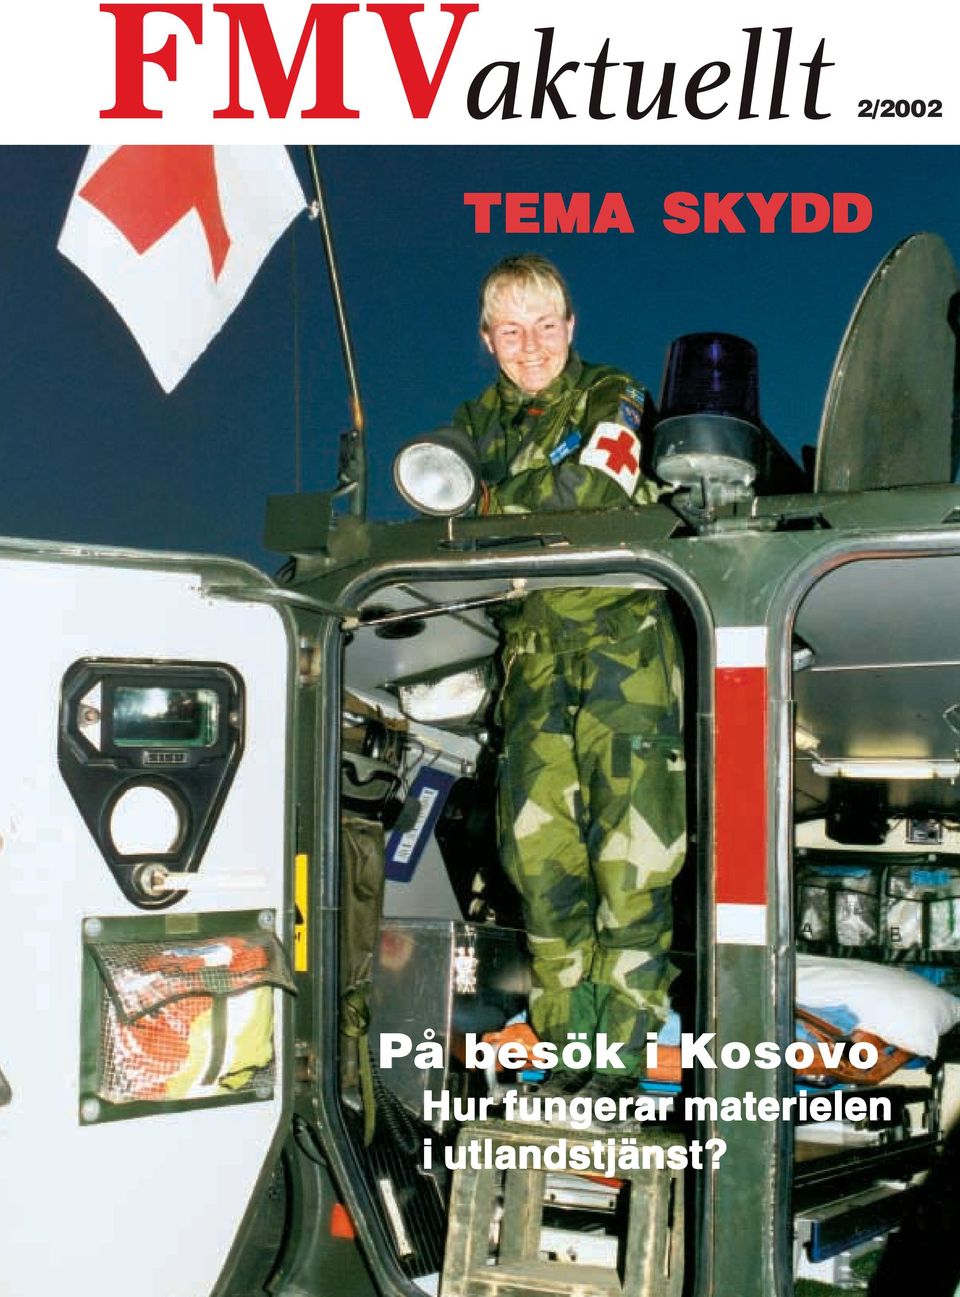 2/2002 TEMA SKYDD. På besök i Kosovo Hur fungerar materielen i utlandstjänst?  - PDF Gratis nedladdning